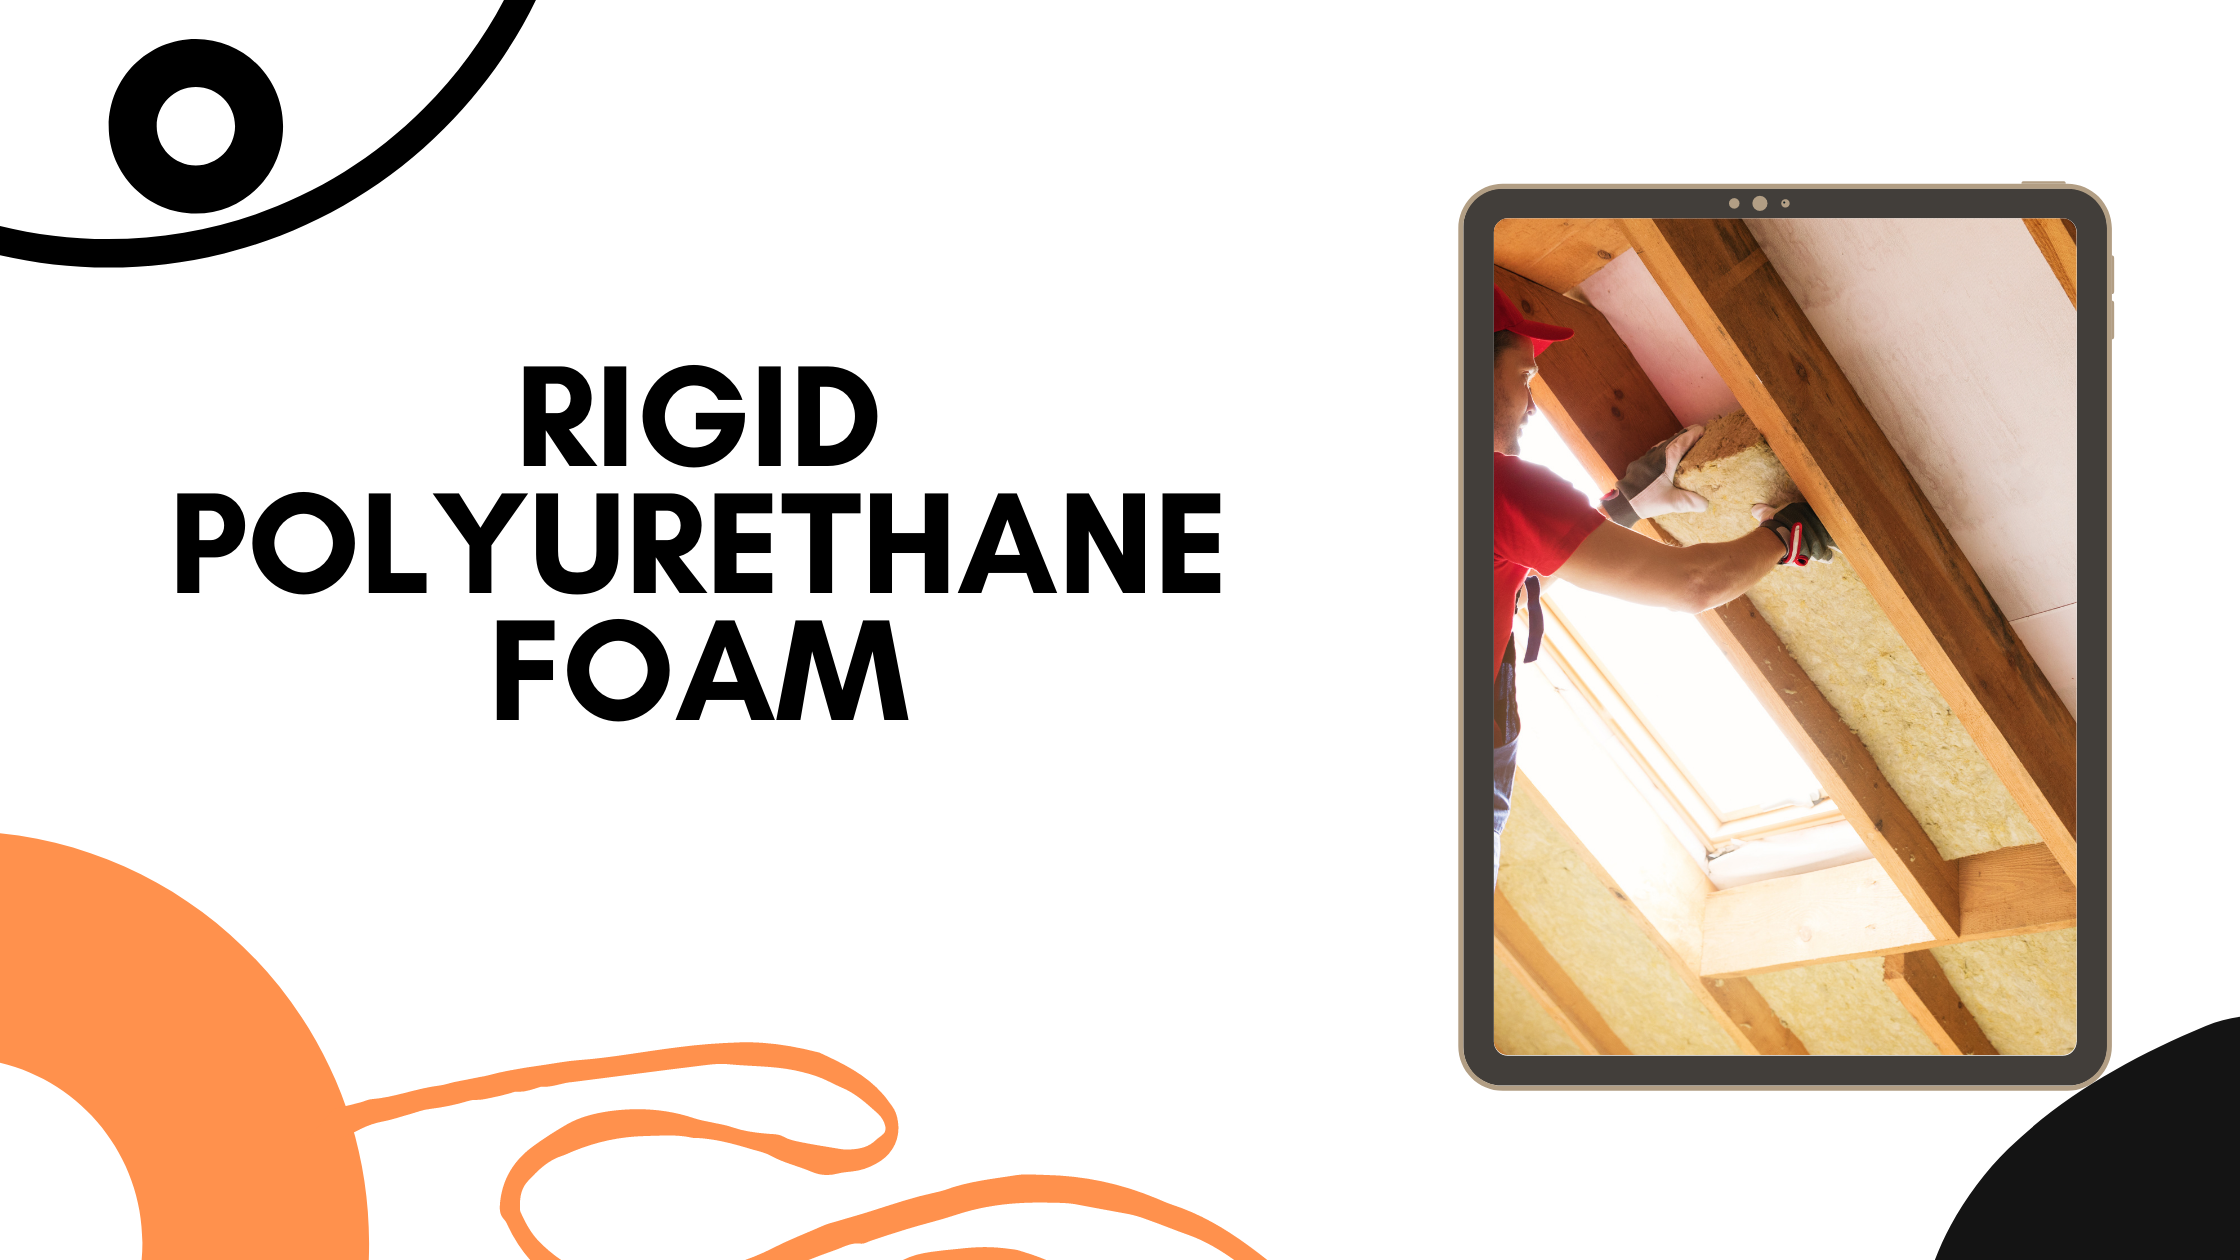 About Rigid Polyurethane Foam (1)